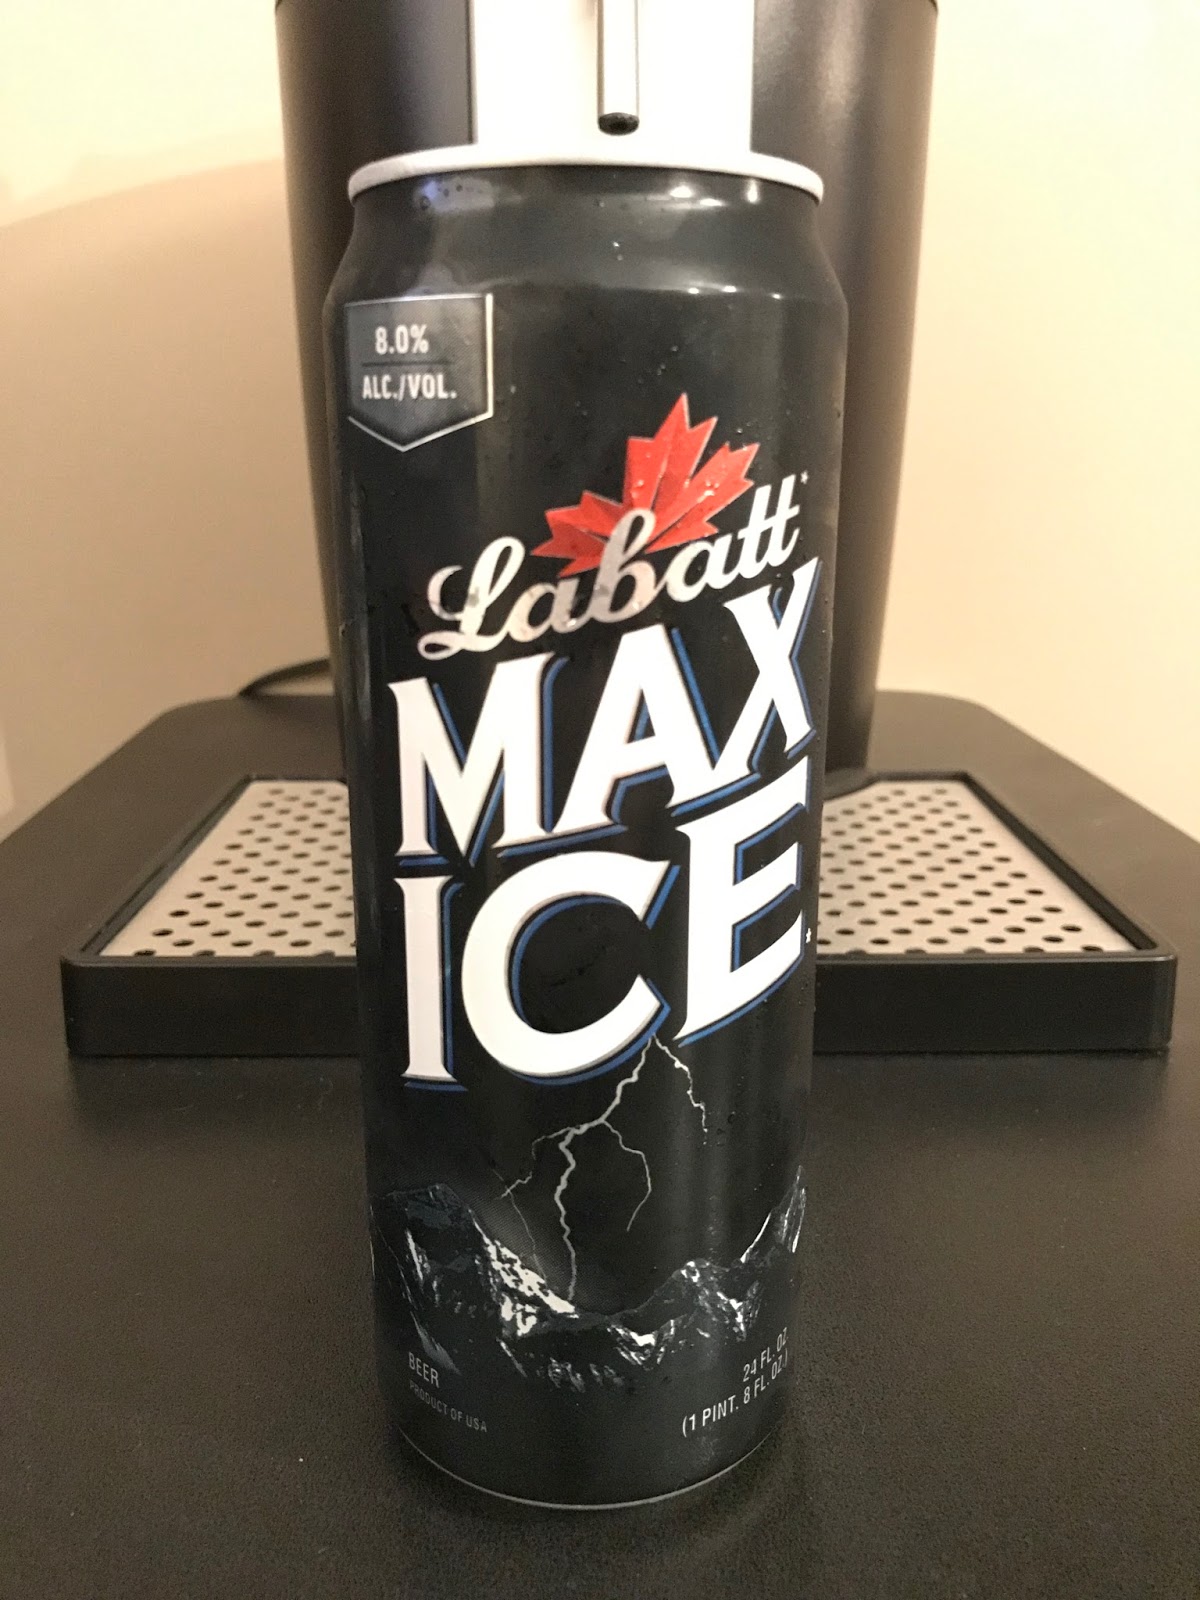 beer-of-the-week-labatt-max-ice